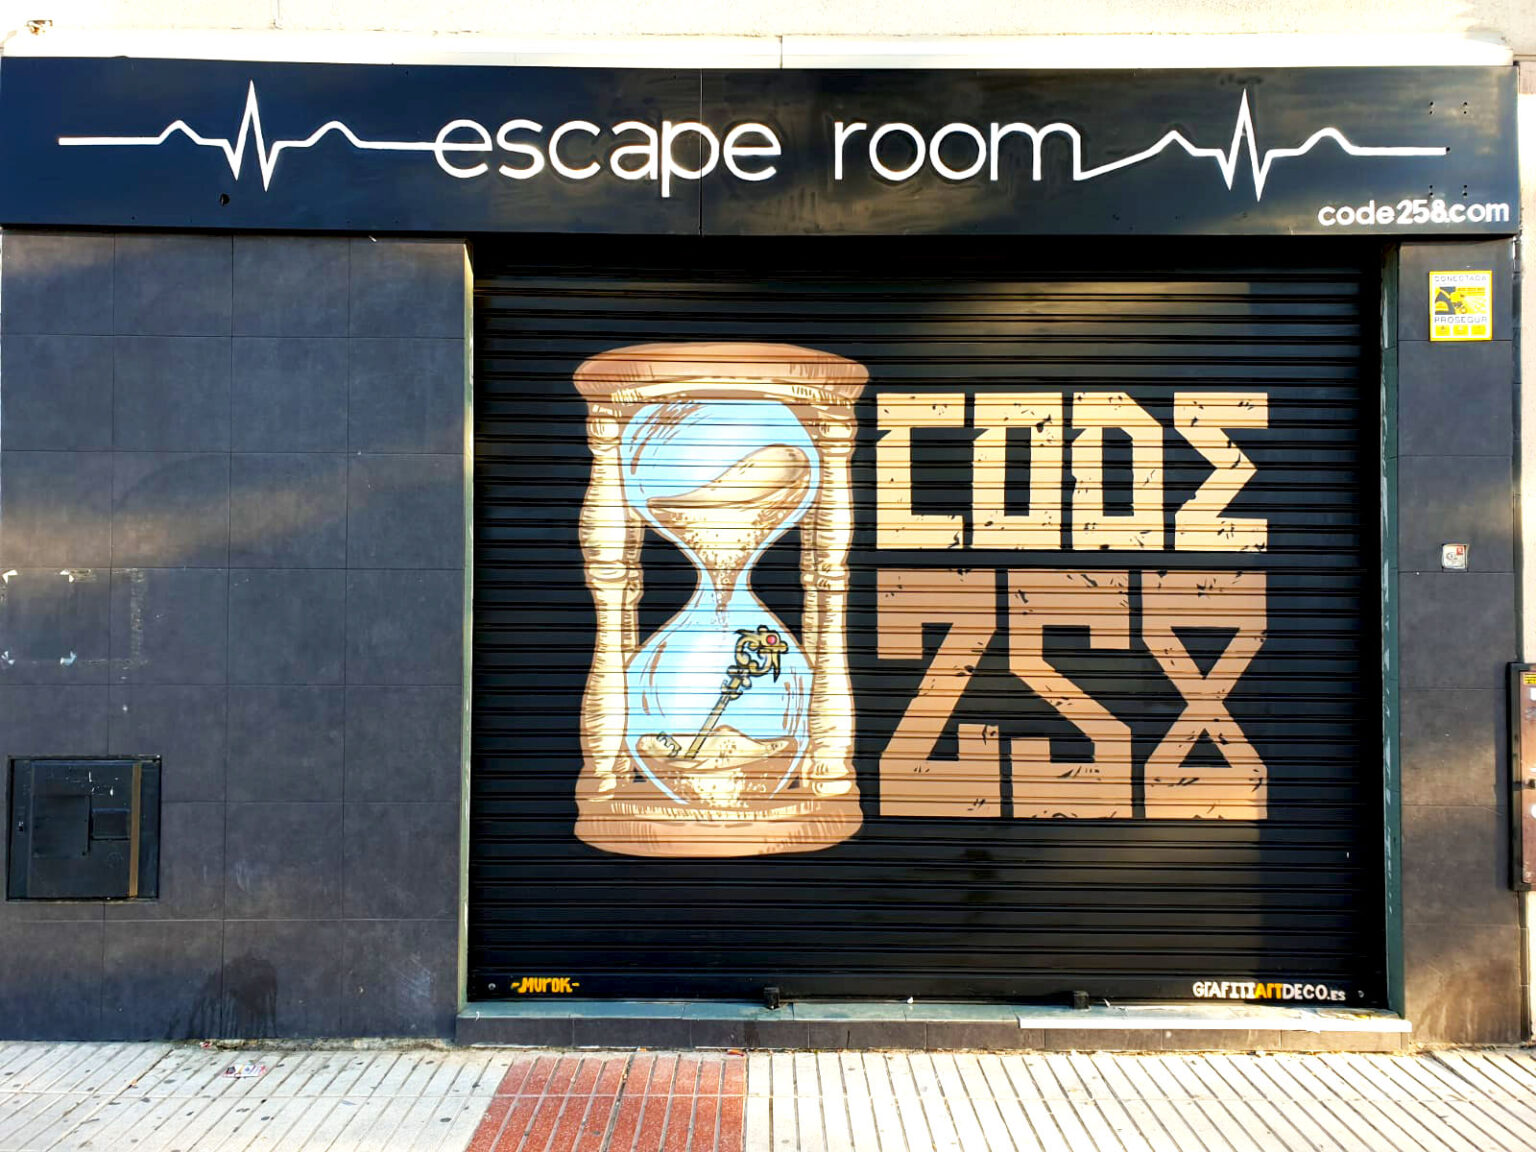 Graffiti escape room